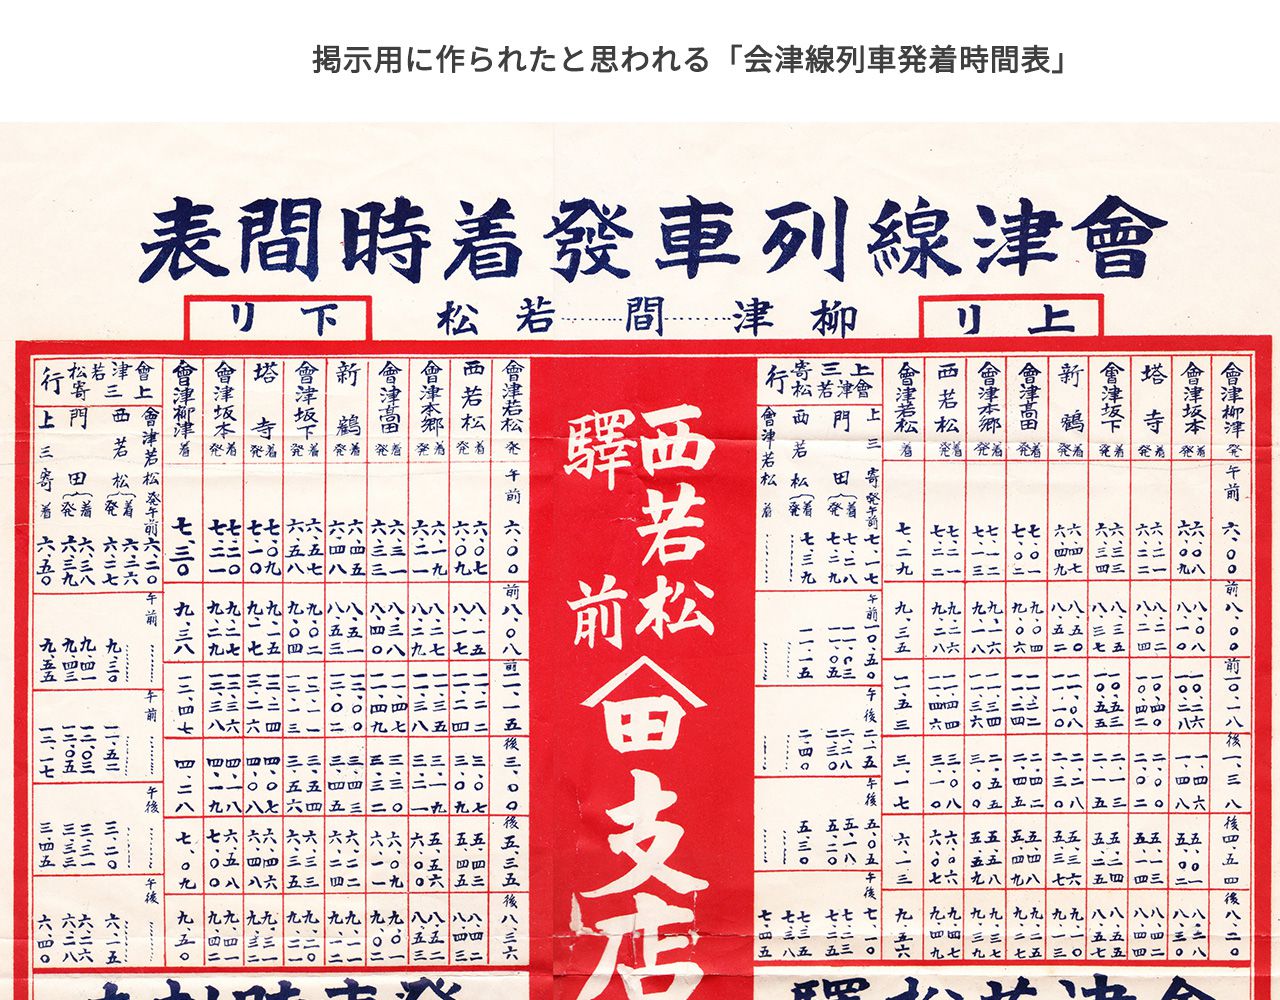 掲示用に作られたと思われる「会津線列車発着時間表」